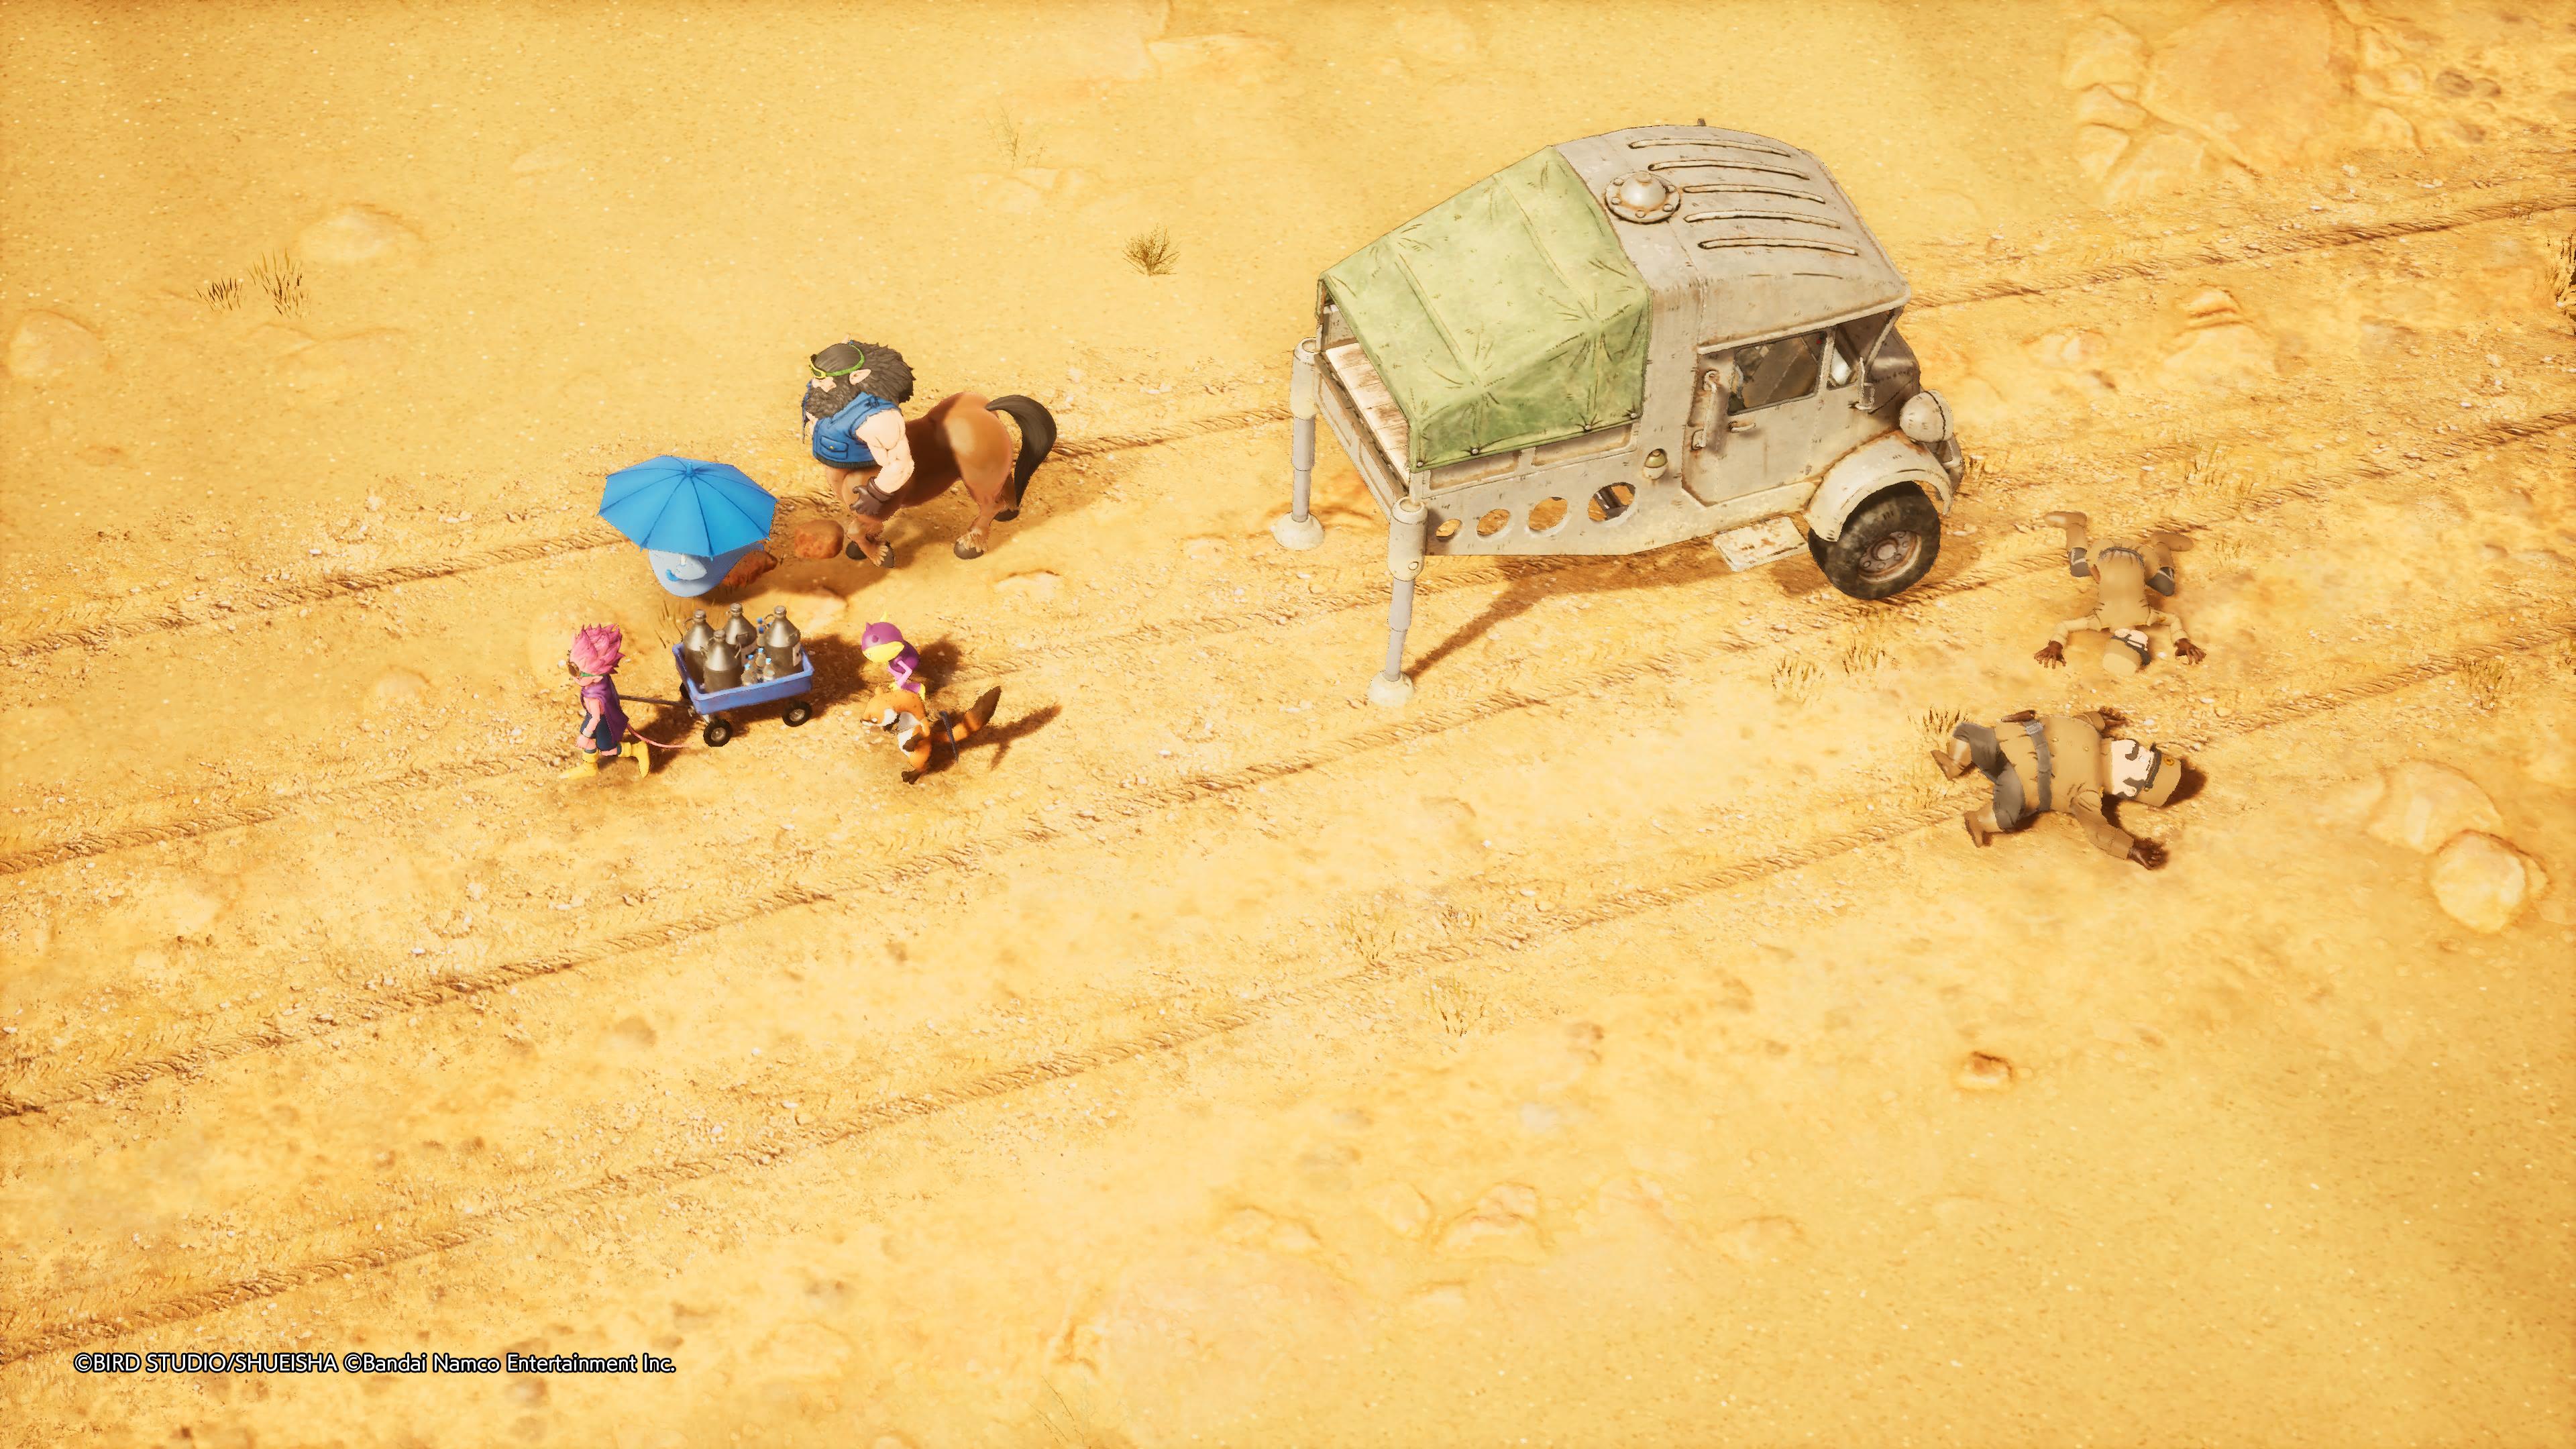 Reseña: Sand Land, una fiel adaptación de la obra de Akira Toriyama 50